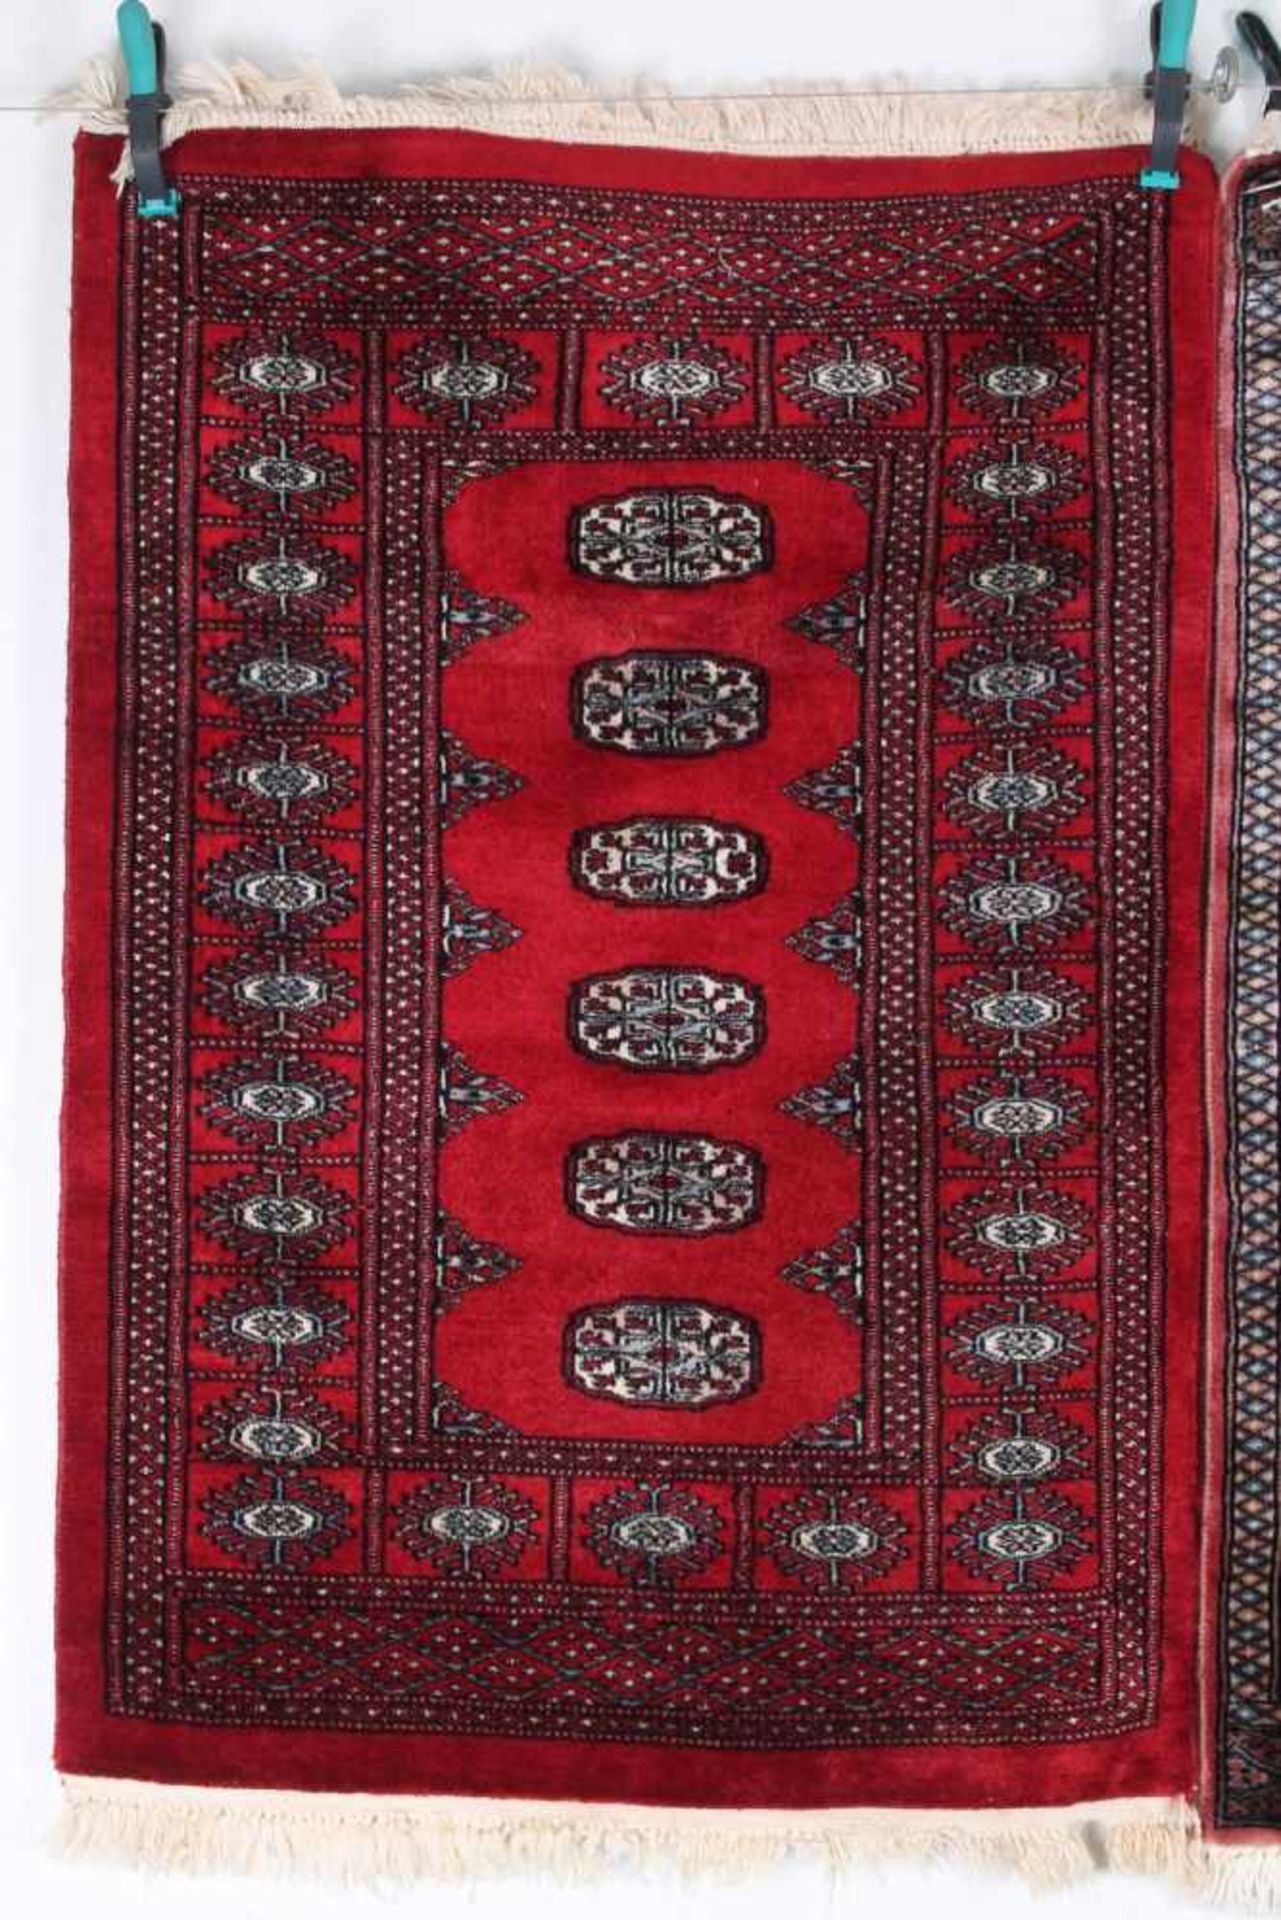 2 Teppiche Kaukasus, handgeknüpfter Teppich, Wolle, 116x79cm / 114x79cm, 6-700.000 Konten pro qm., - Bild 2 aus 5